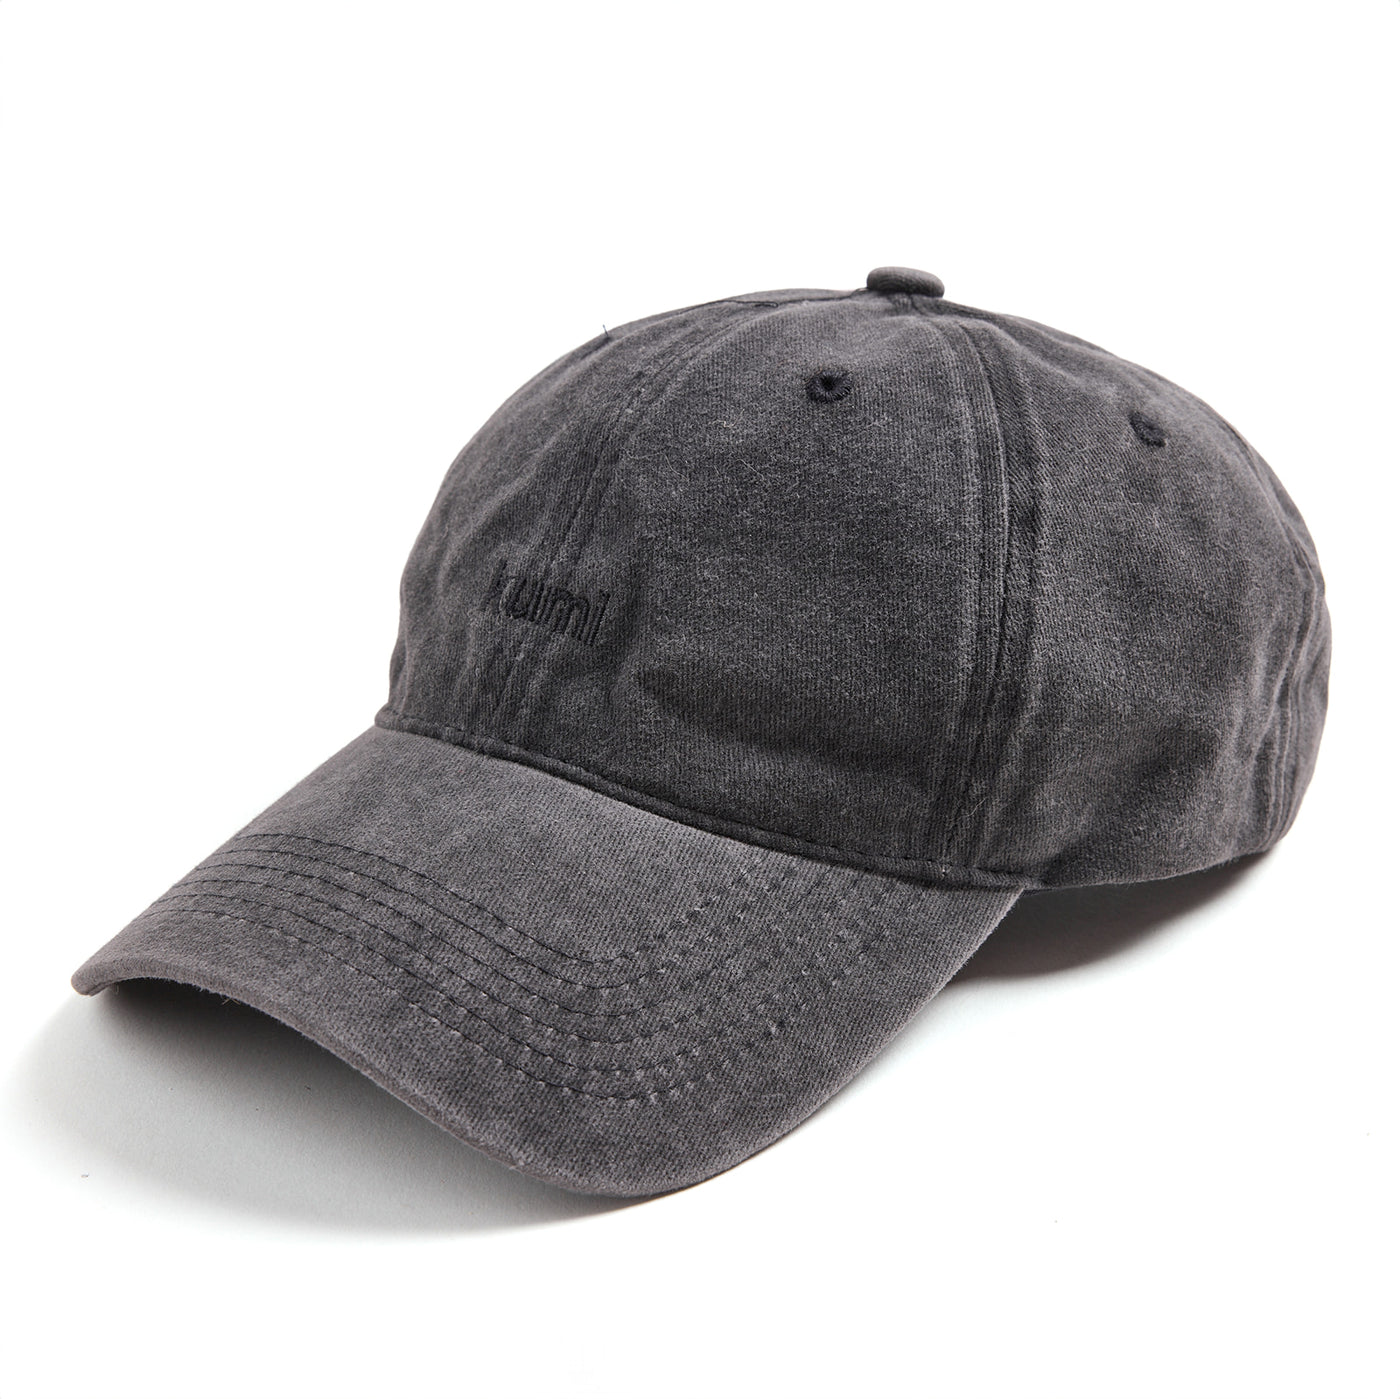 Black cap hat